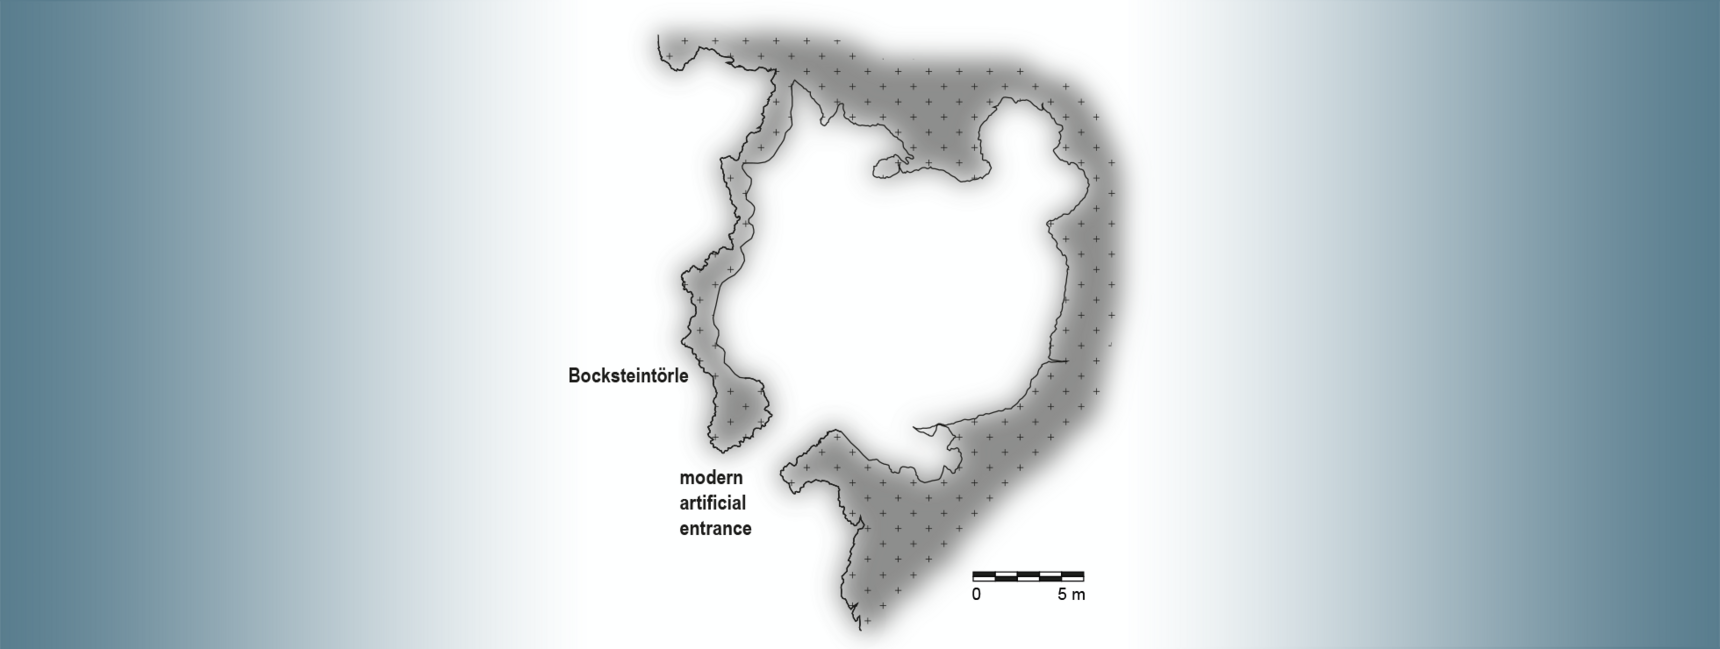 Ground plan of Bockstein Cave.